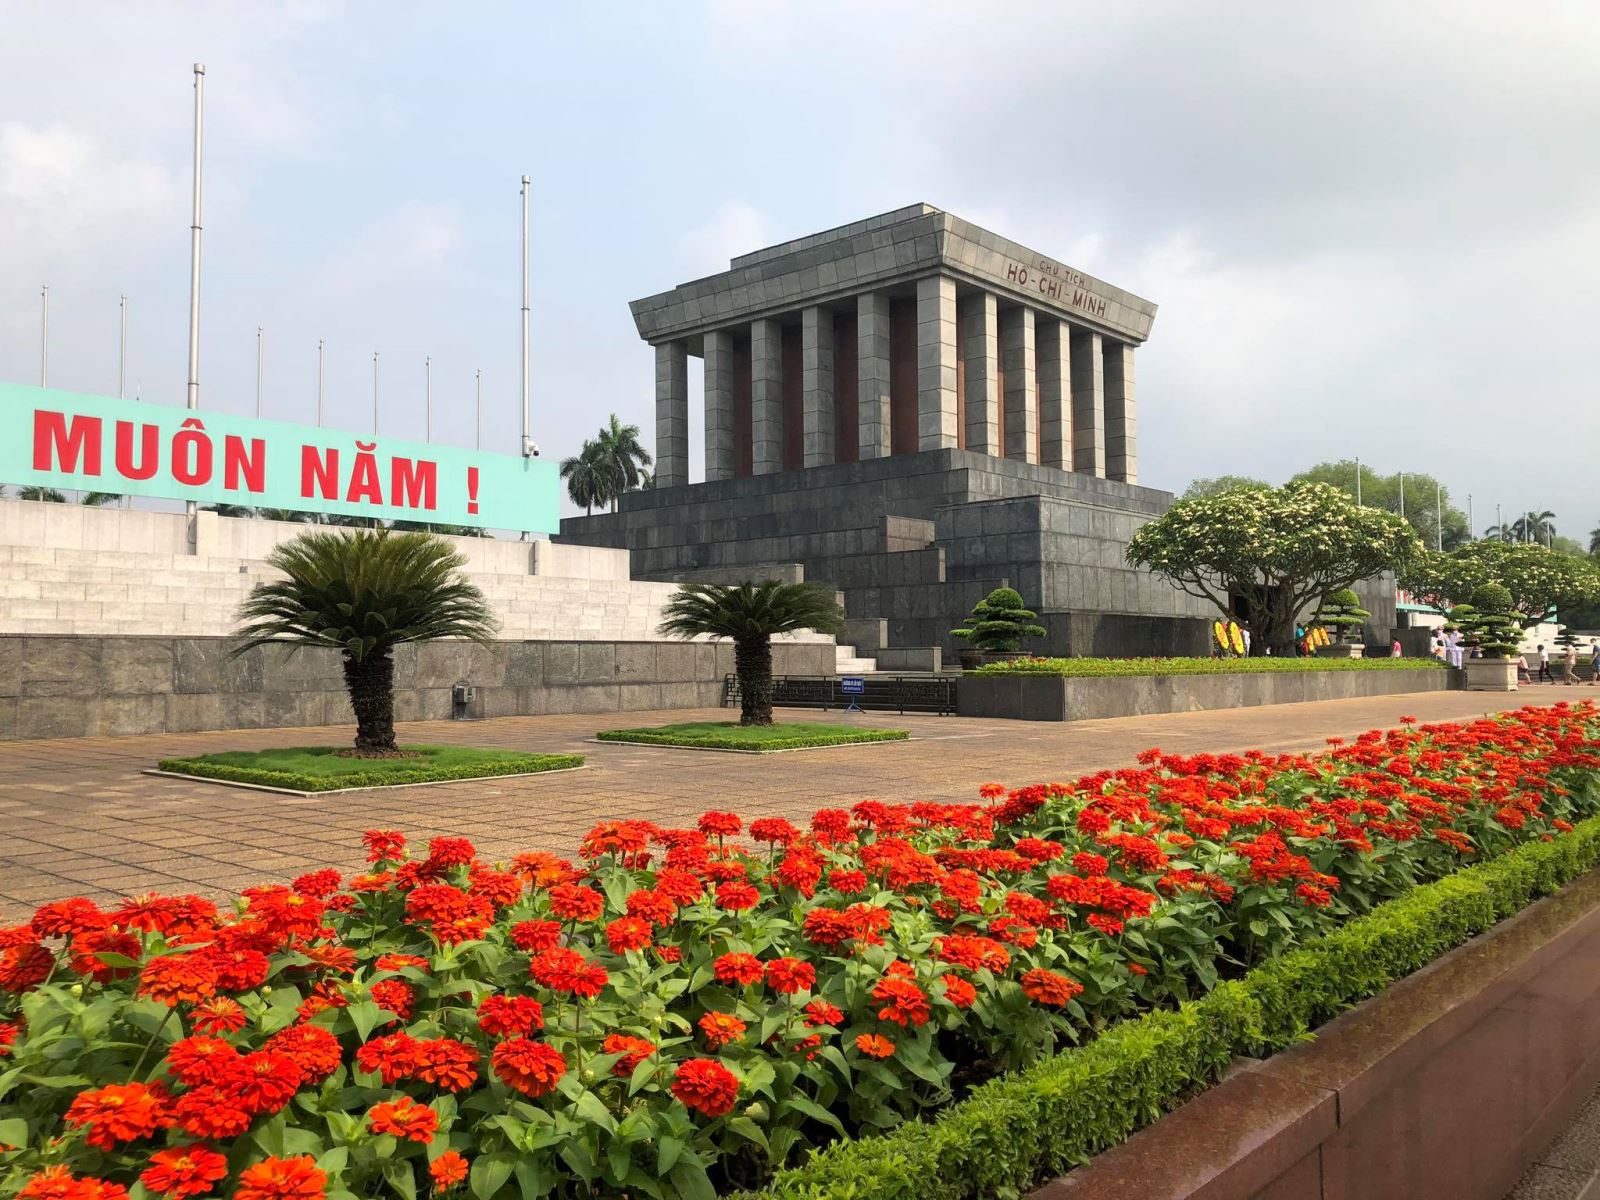 Viếng lăng Chủ tịch Hồ Chí Minh sẽ là một trải nghiệm tuyệt vời cho bạn để tìm hiểu về nhân cách đức tính của một vị lãnh đạo vĩ đại và nước Việt Nam yêu quý. Hãy tới đây và cùng tôn vinh tinh thần vĩ đại của Người.